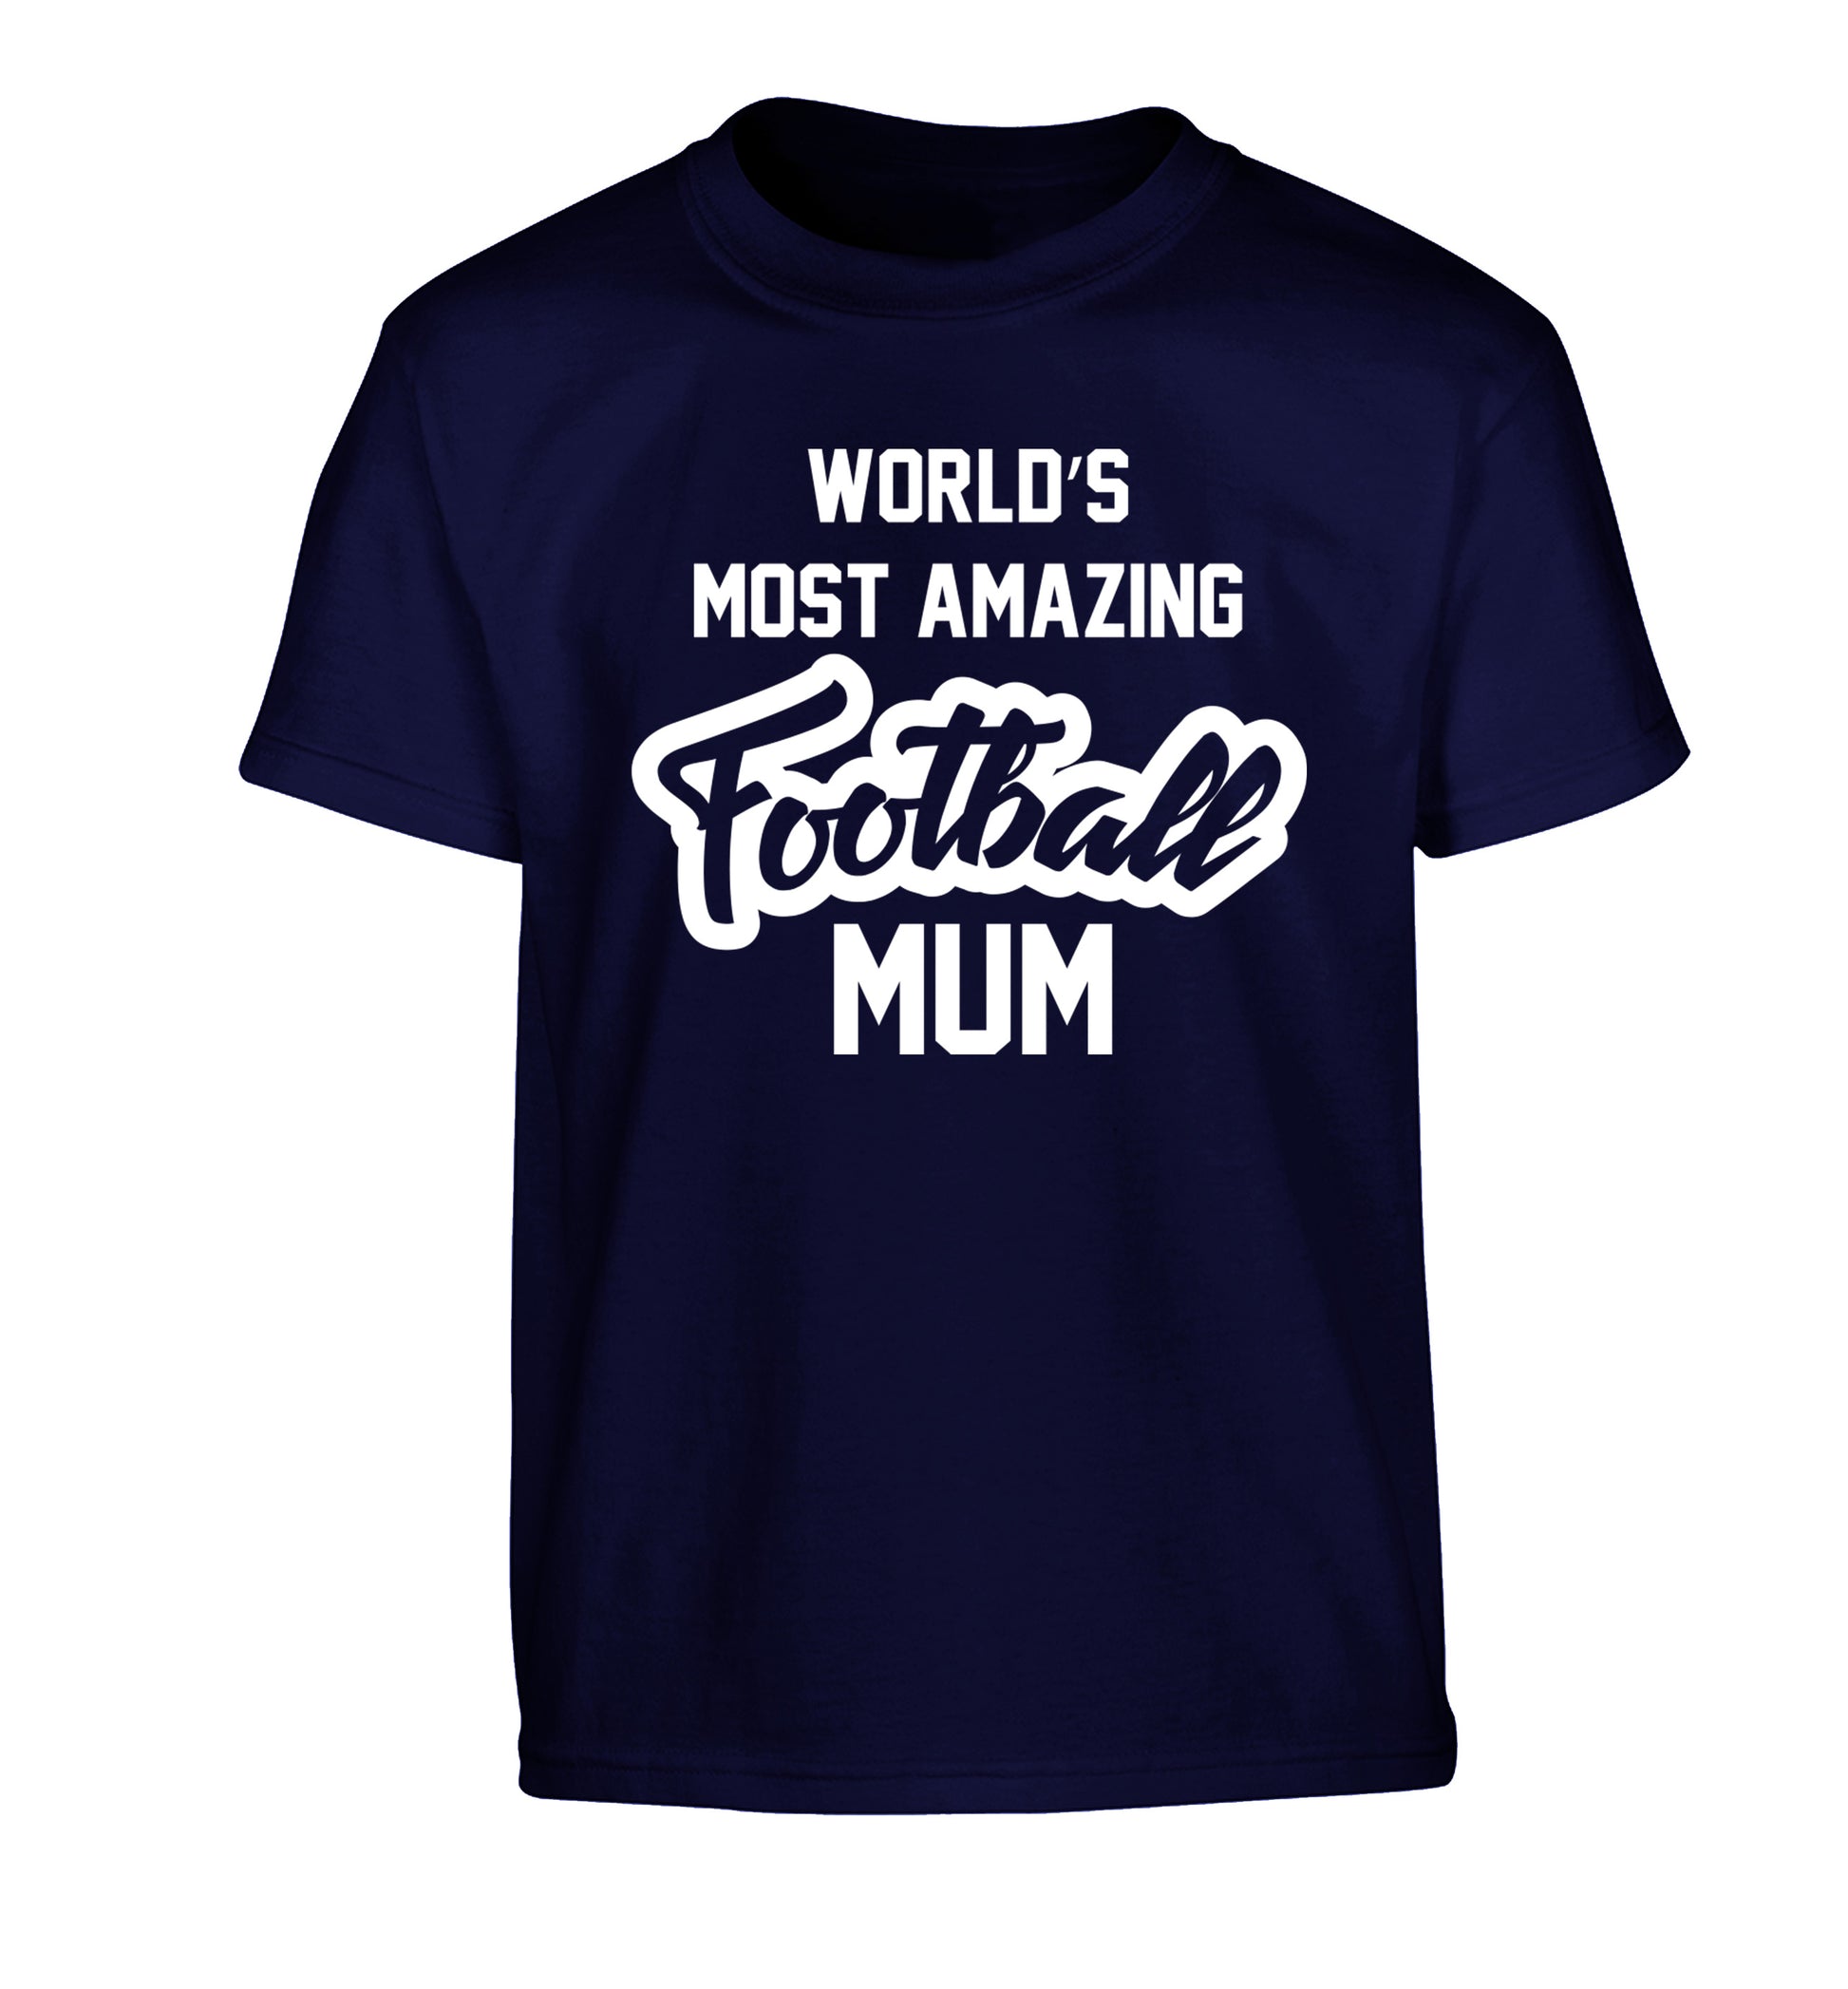 Worlds most amazing football mum Children's navy Tshirt 12-14 Years